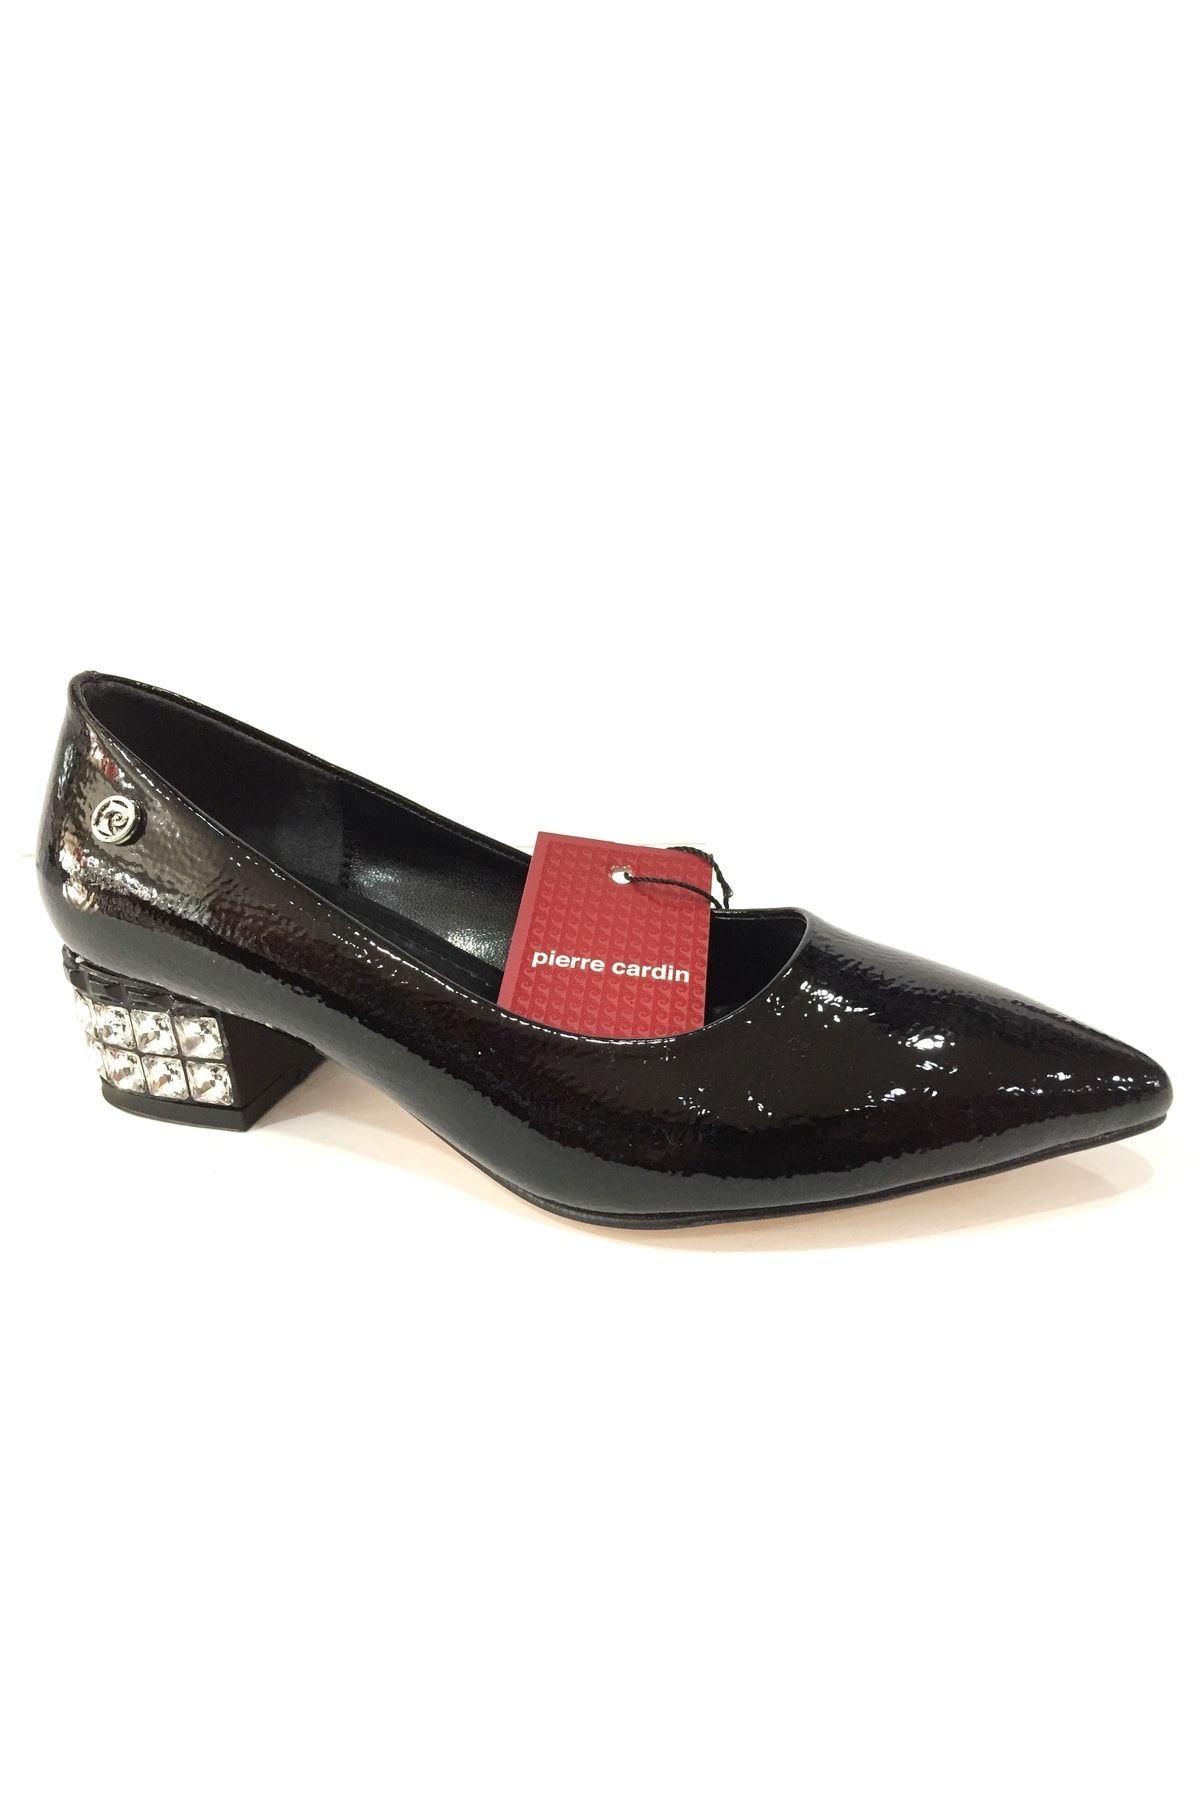 Pierre Cardin 51198 Kadın Siyah Rugan Alçak Topuklu Taşlı Ayakkabı